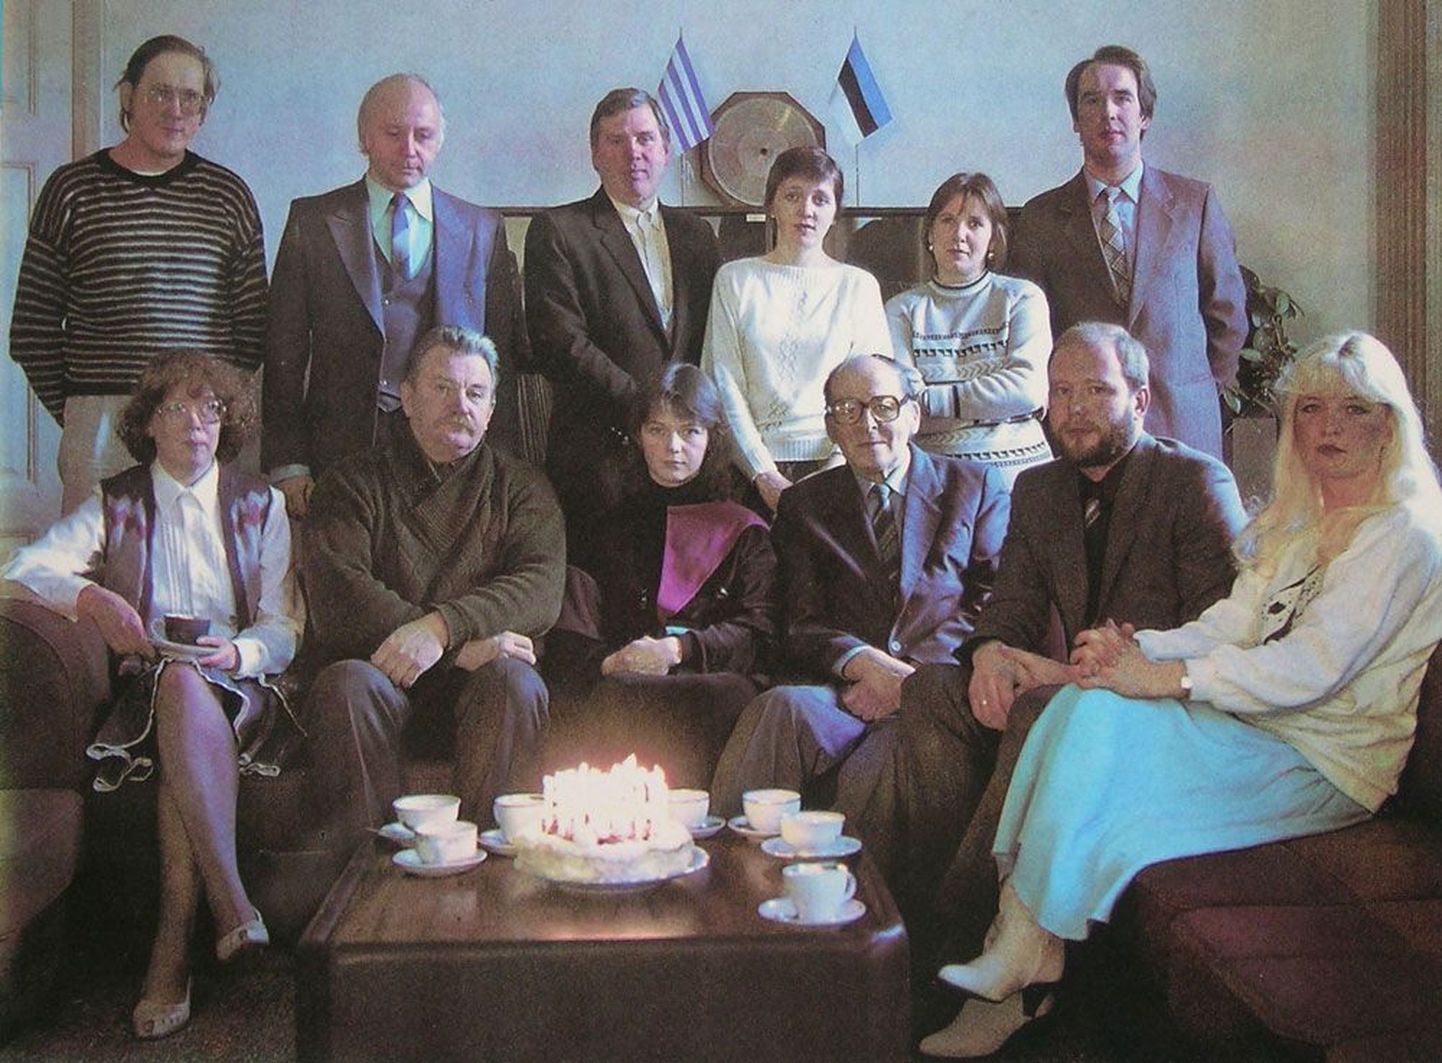 1989. aastal tähistati Tallinna heliplaadistuudio 30 aasta juubelit. Esireas vasakult paremale: Merike Pau, Paul Krünberk, Sirje Older, Joann Juštšuk, Madis Salum ja Marika Rausma. Taga vasakult paremale: Priit Kuulberg, Mart Maripuu, Enn Tomson, Kersti Viil, Ülle Väli ja Enno Mäemets.